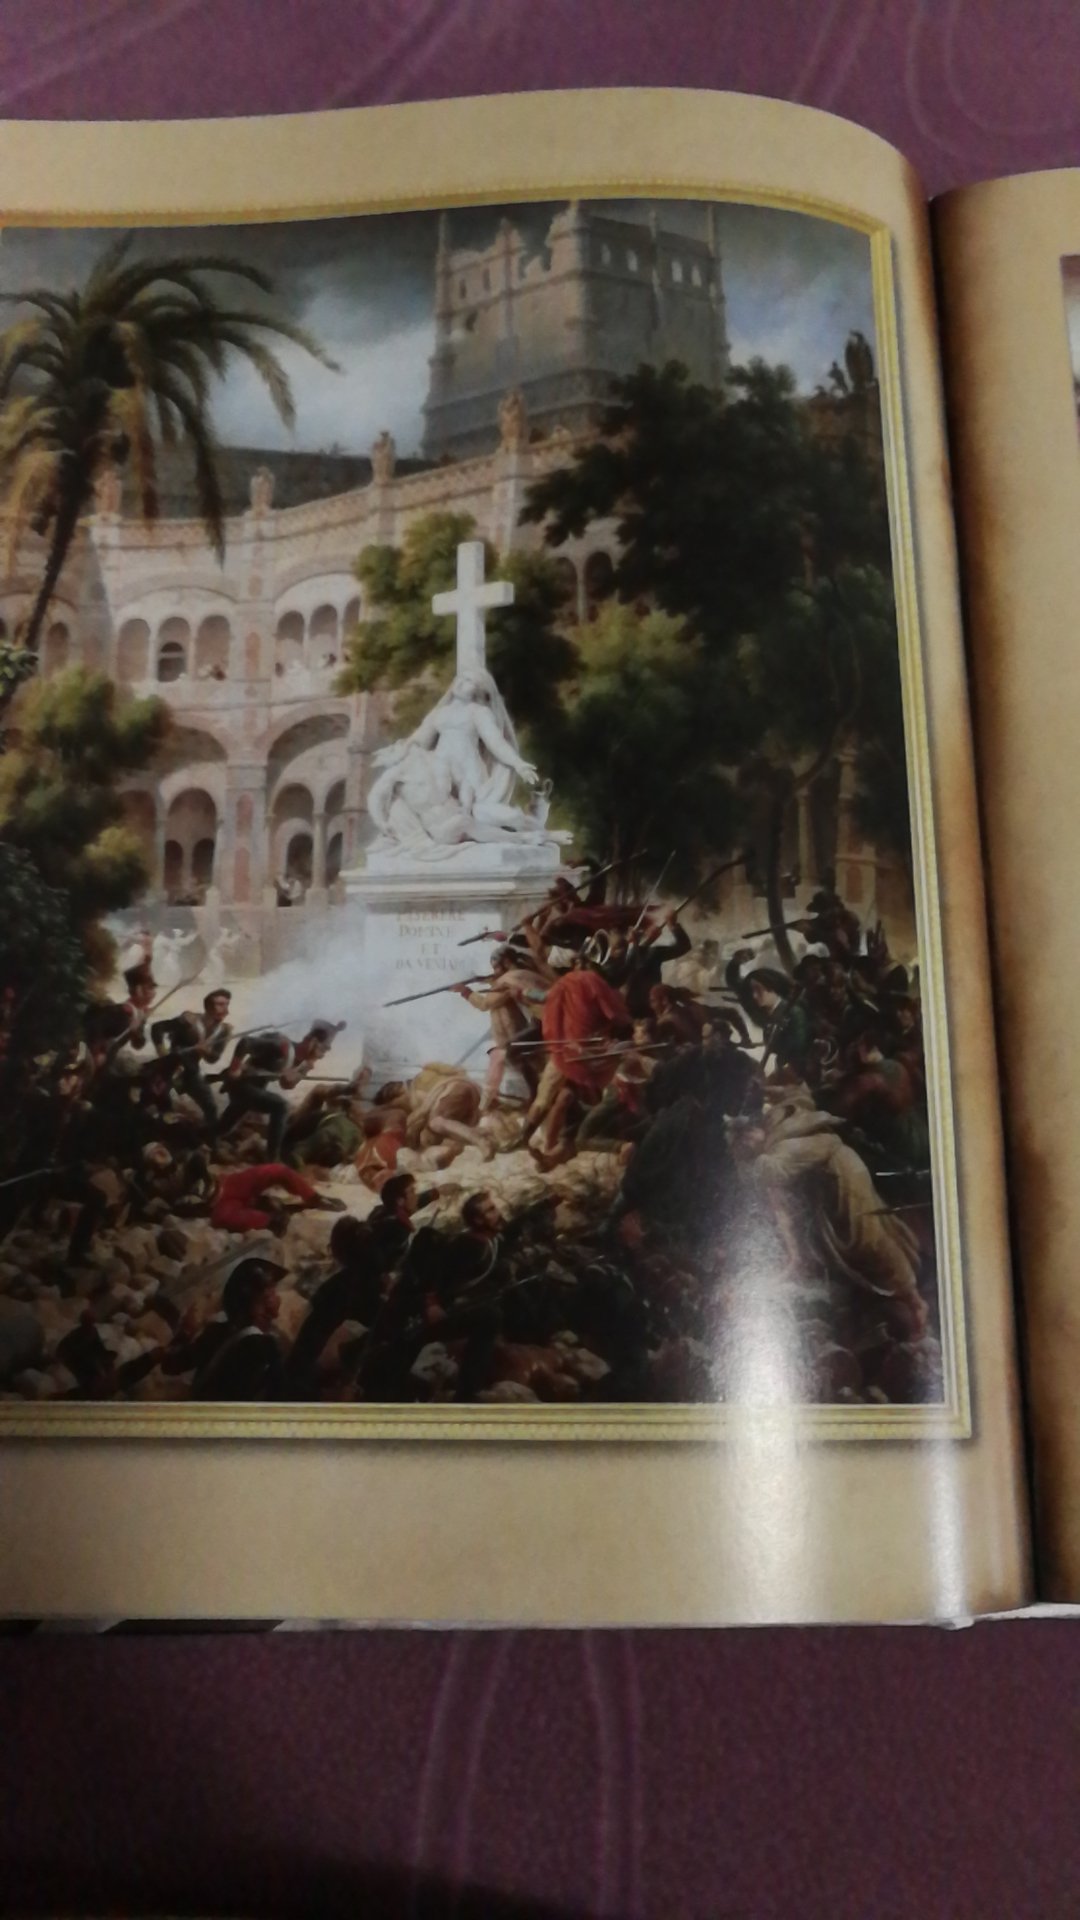 完美，诸多拿破仑的油画插图，非常精美。